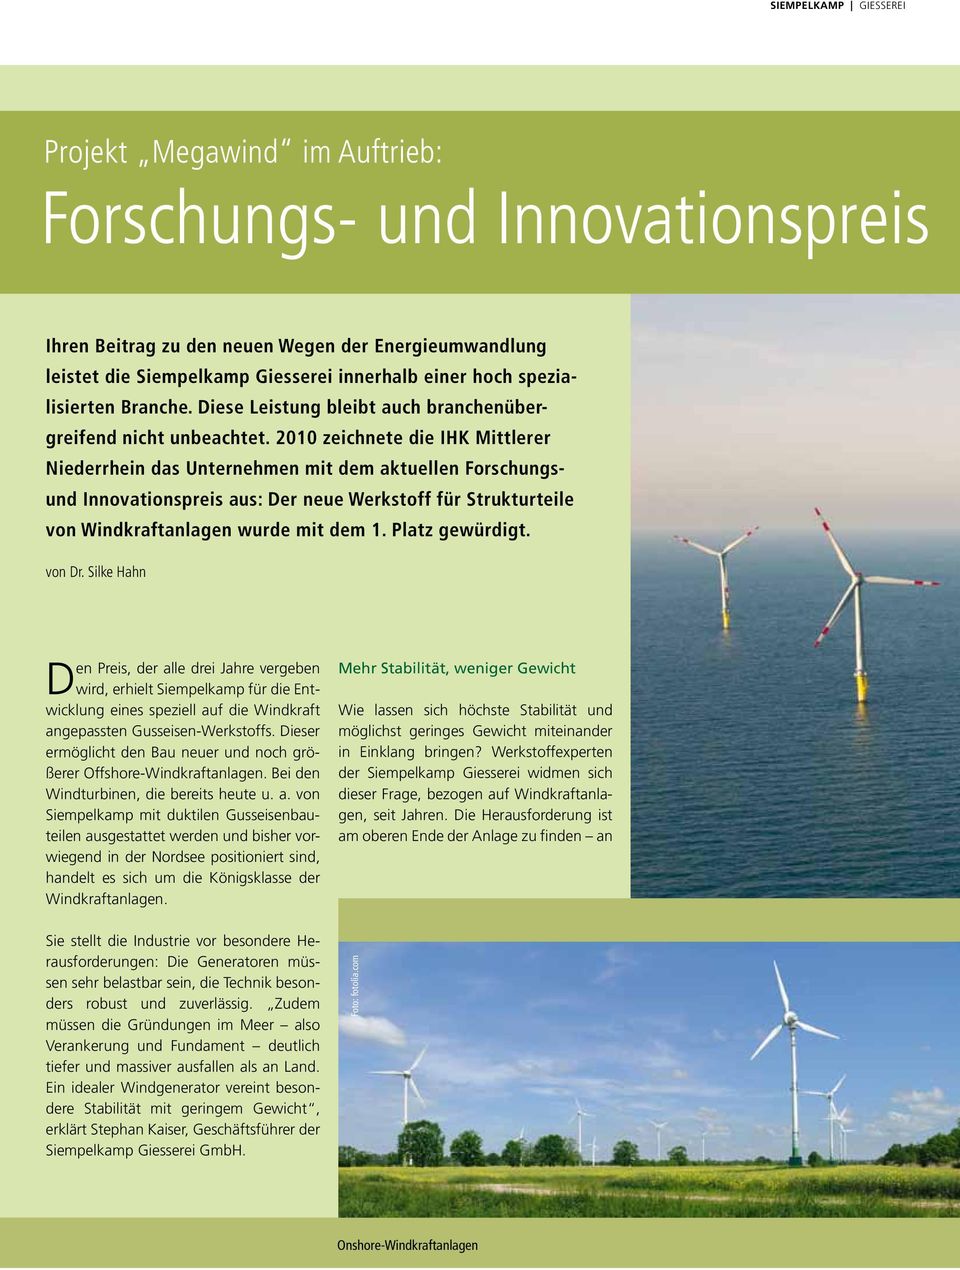 2010 zeichnete die IHK Mittlerer Niederrhein das Unternehmen mit dem aktuellen Forschungsund Innovationspreis aus: Der neue Werkstoff für Strukturteile von Windkraftanlagen wurde mit dem 1.